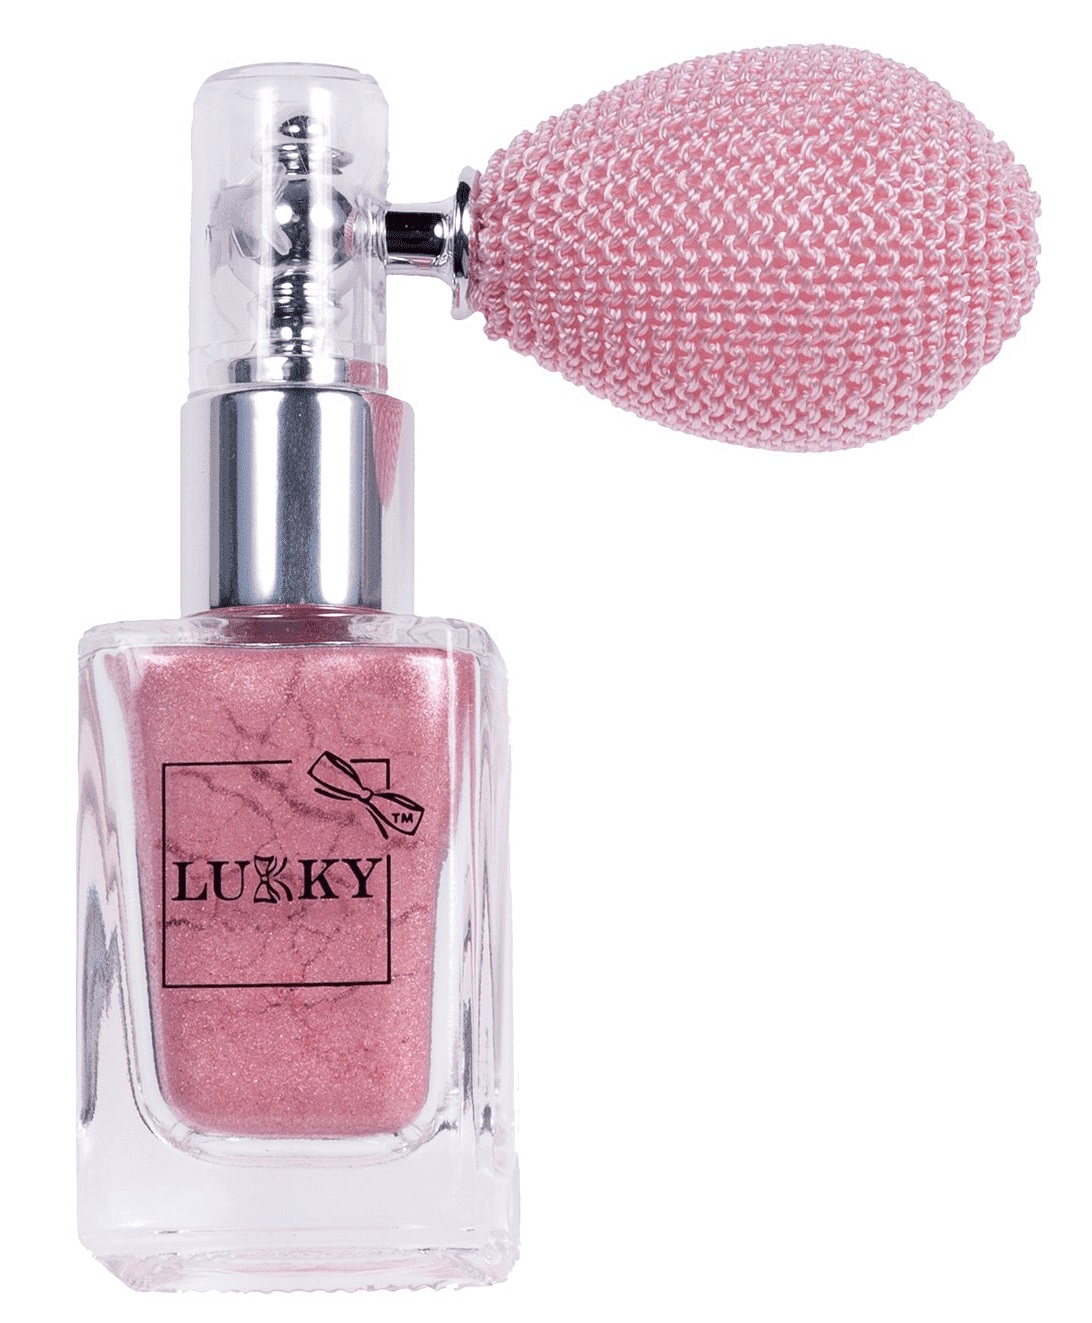 Розовая мерцающая пудра для тела с ароматом ванили Lukky в распылителе - Звездная пыль, 5 г  